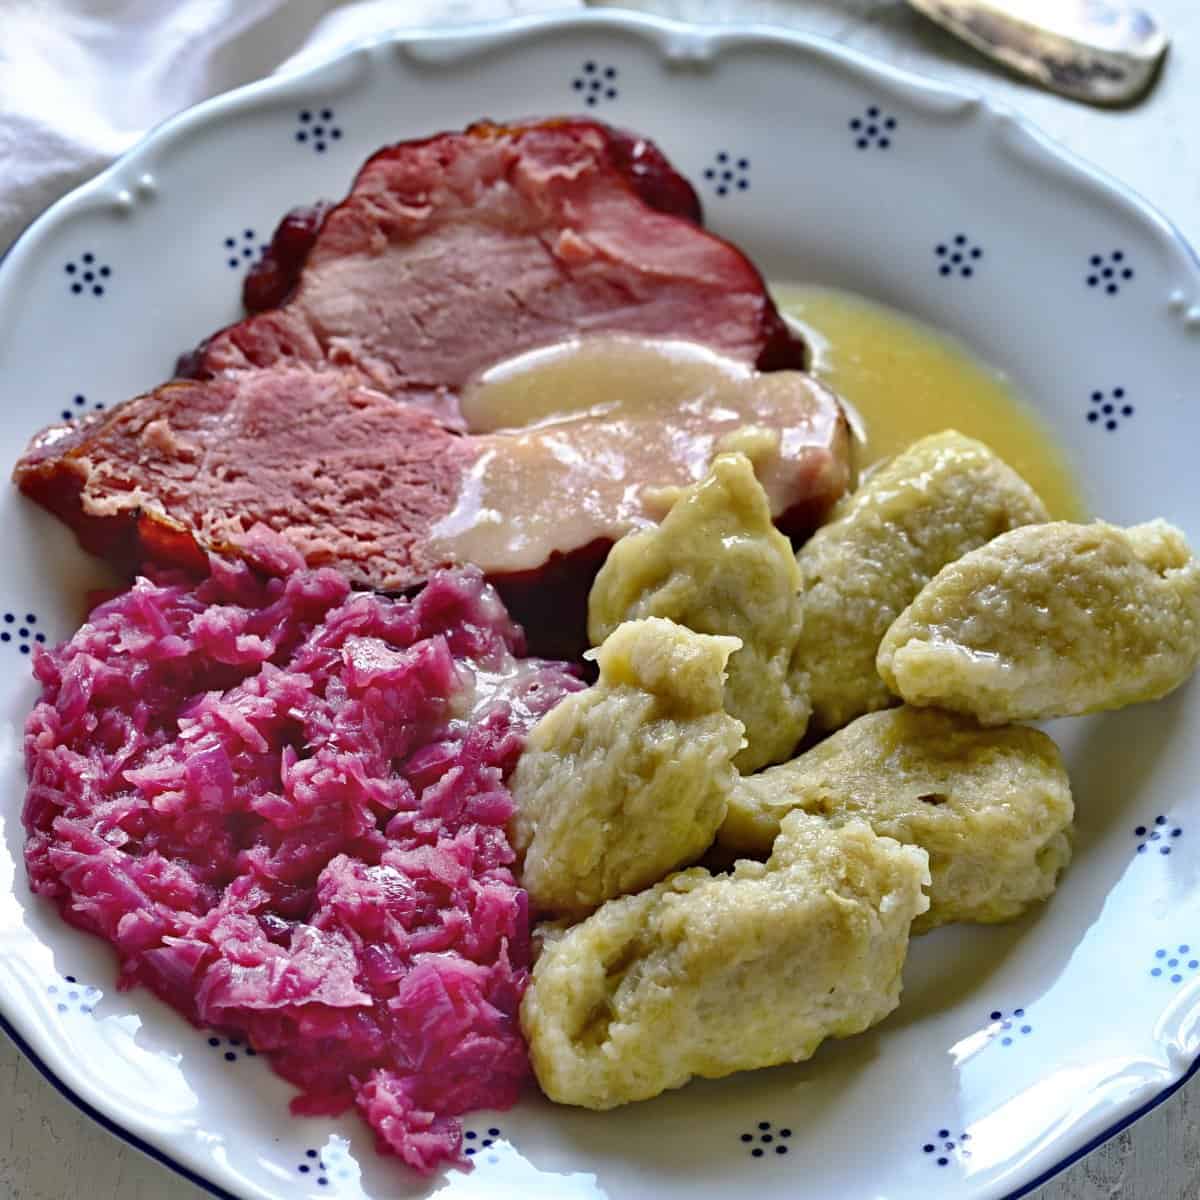 czech chlupaté knedlíky served with smoked meat and red cabbage